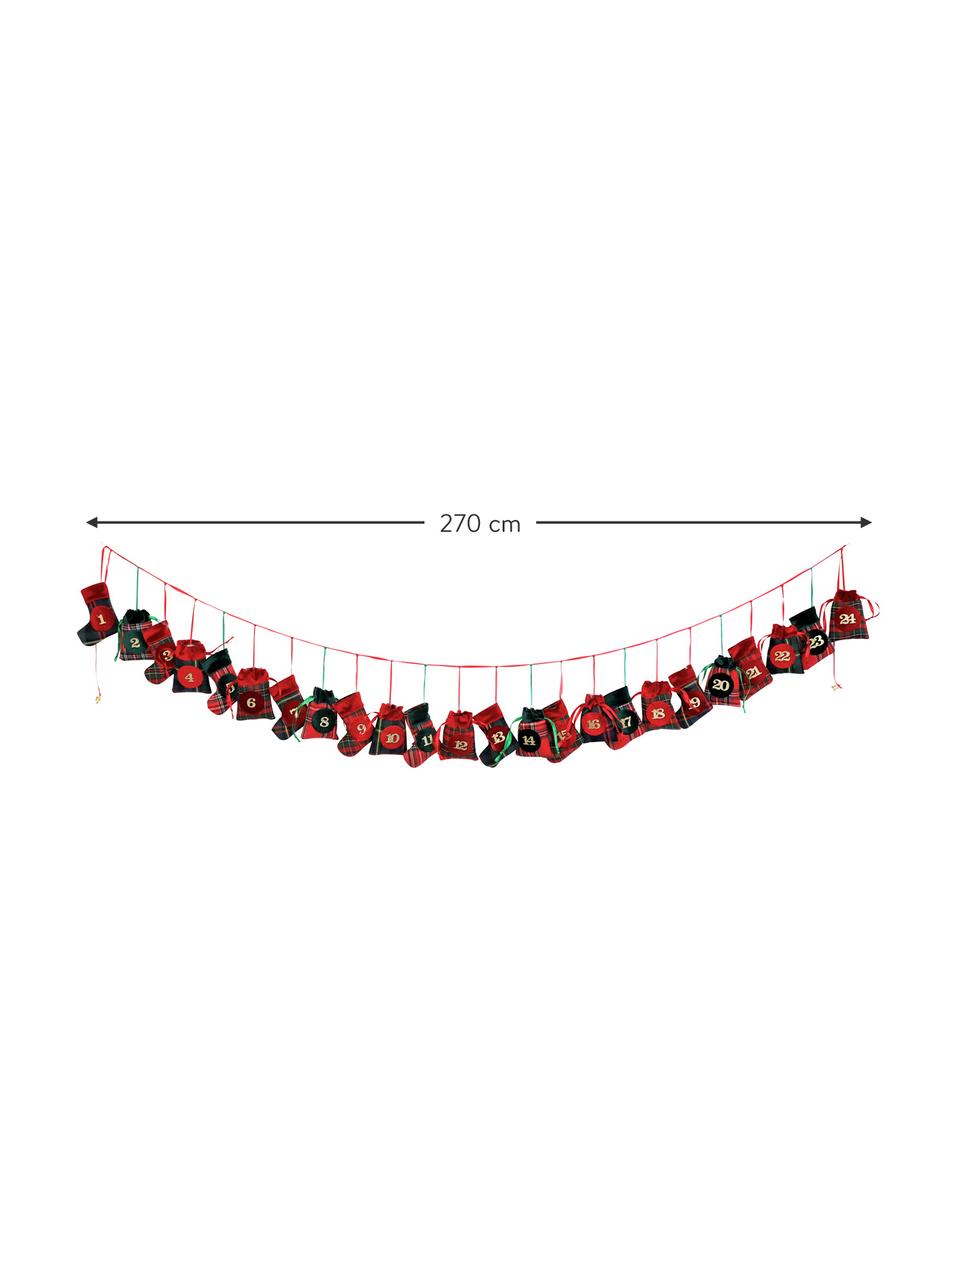 Calendrier de l'Avent Merry X-Mas, Polyester, coton, Vert, rouge, noir, long. 270 cm